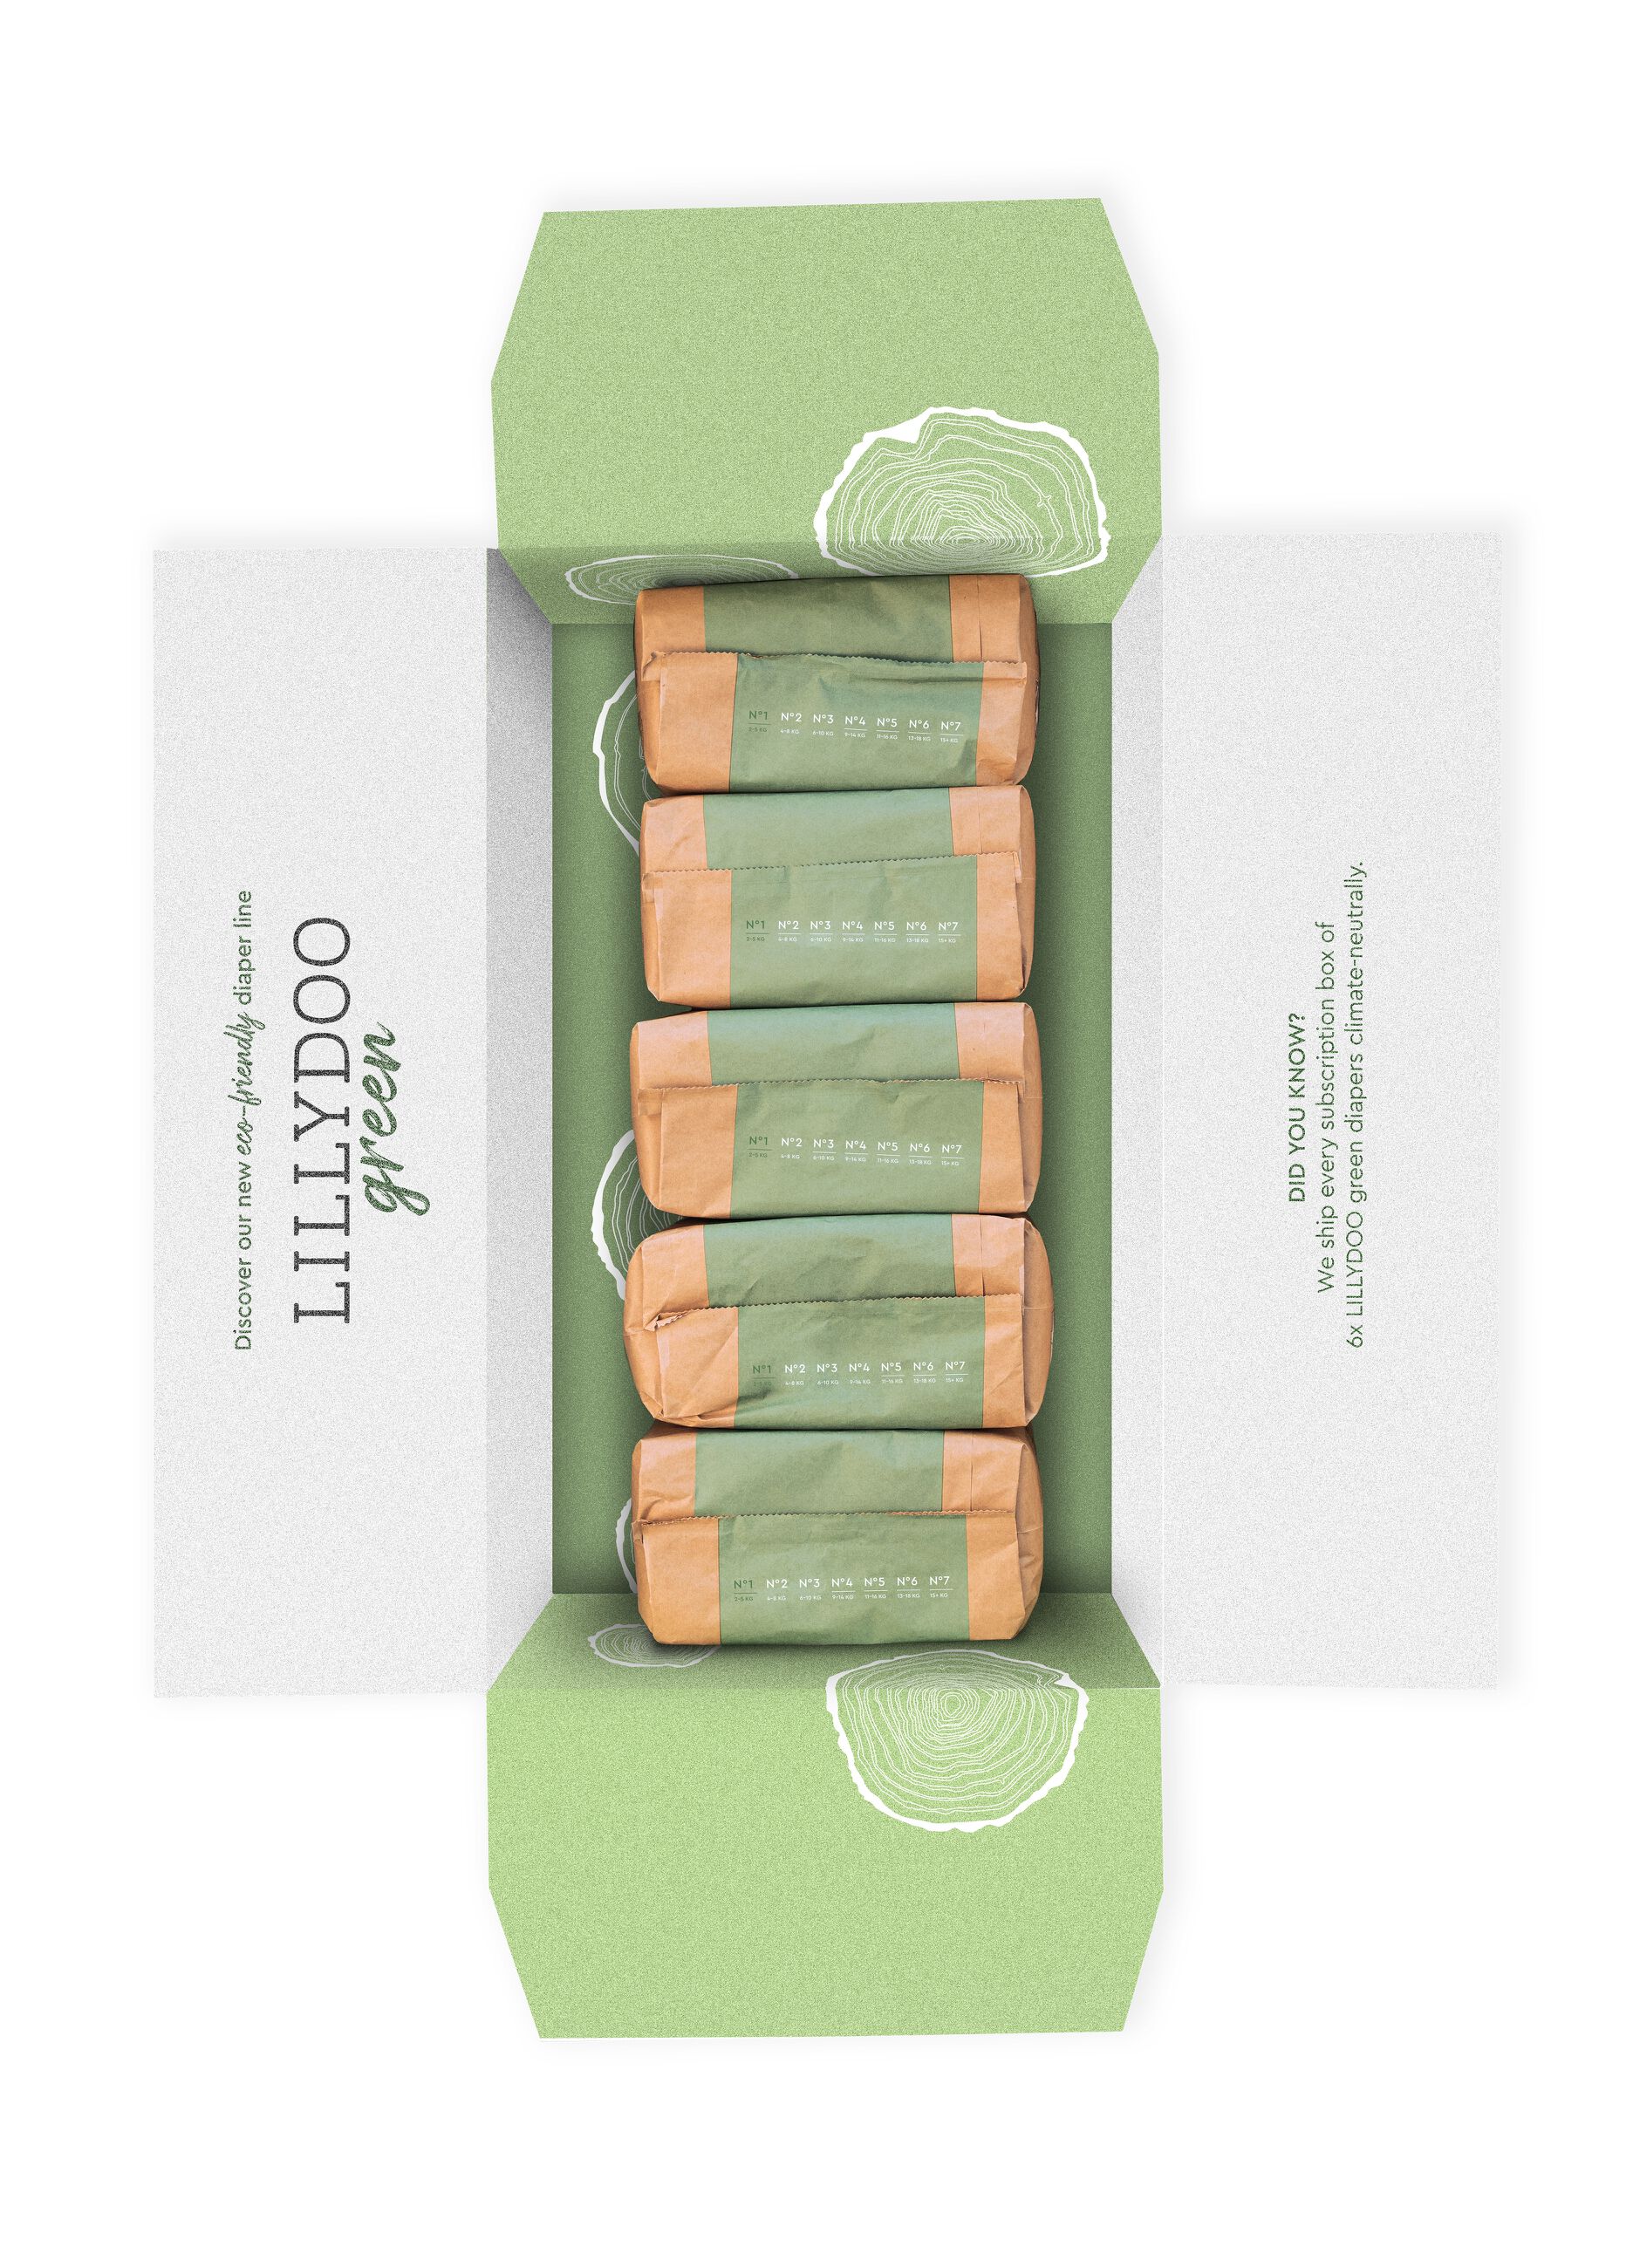 Pannolini multipack da 5 confezioni ecosostenibili N°1 (2-5Kg) Lillydoo